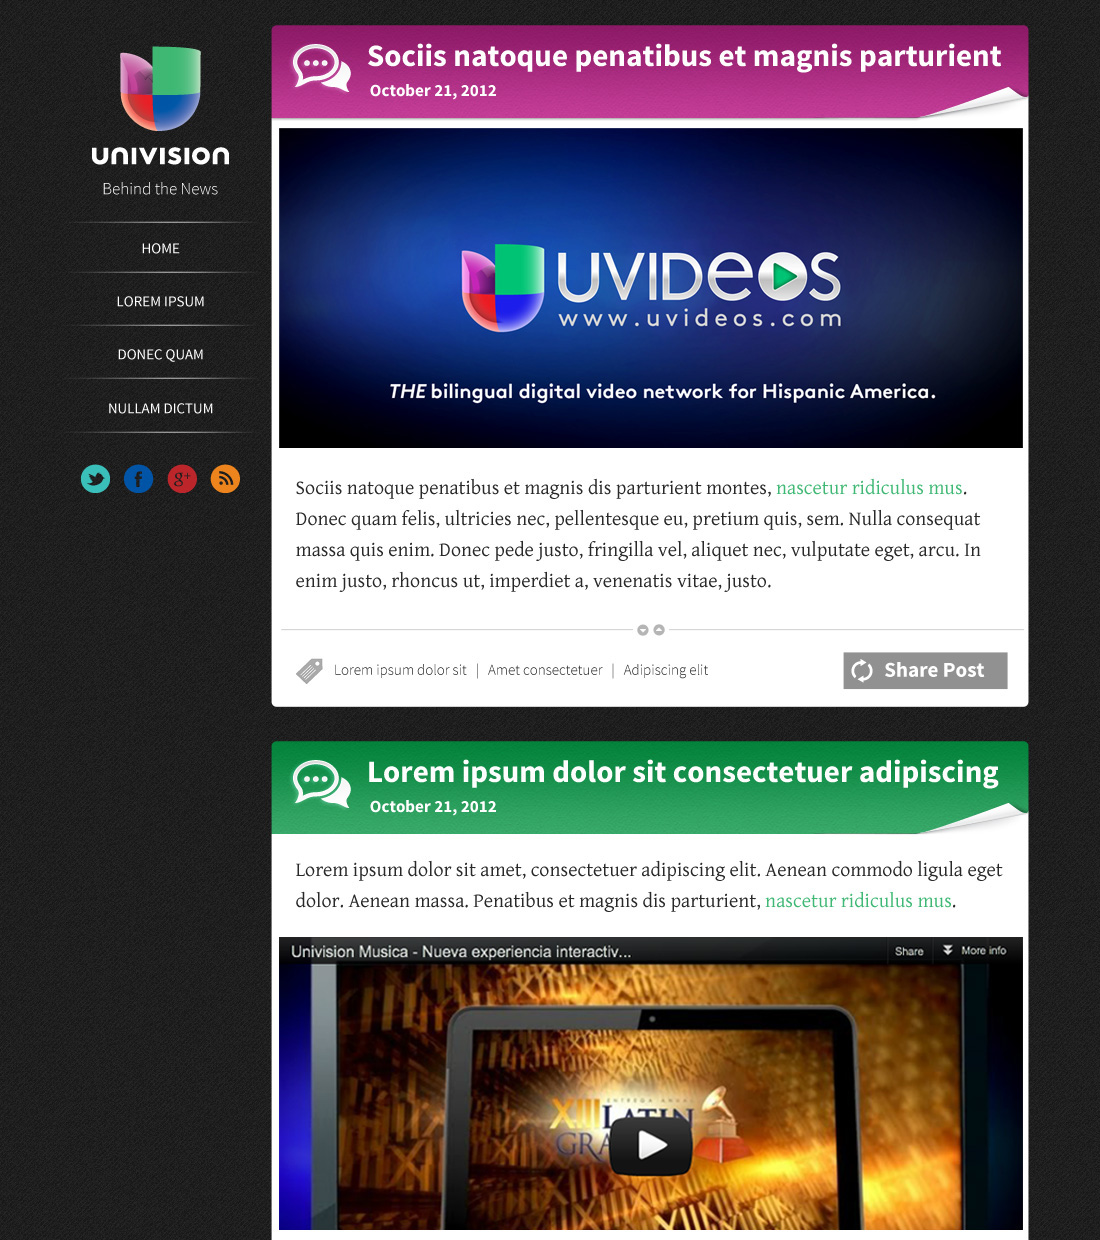 tumblr Univision